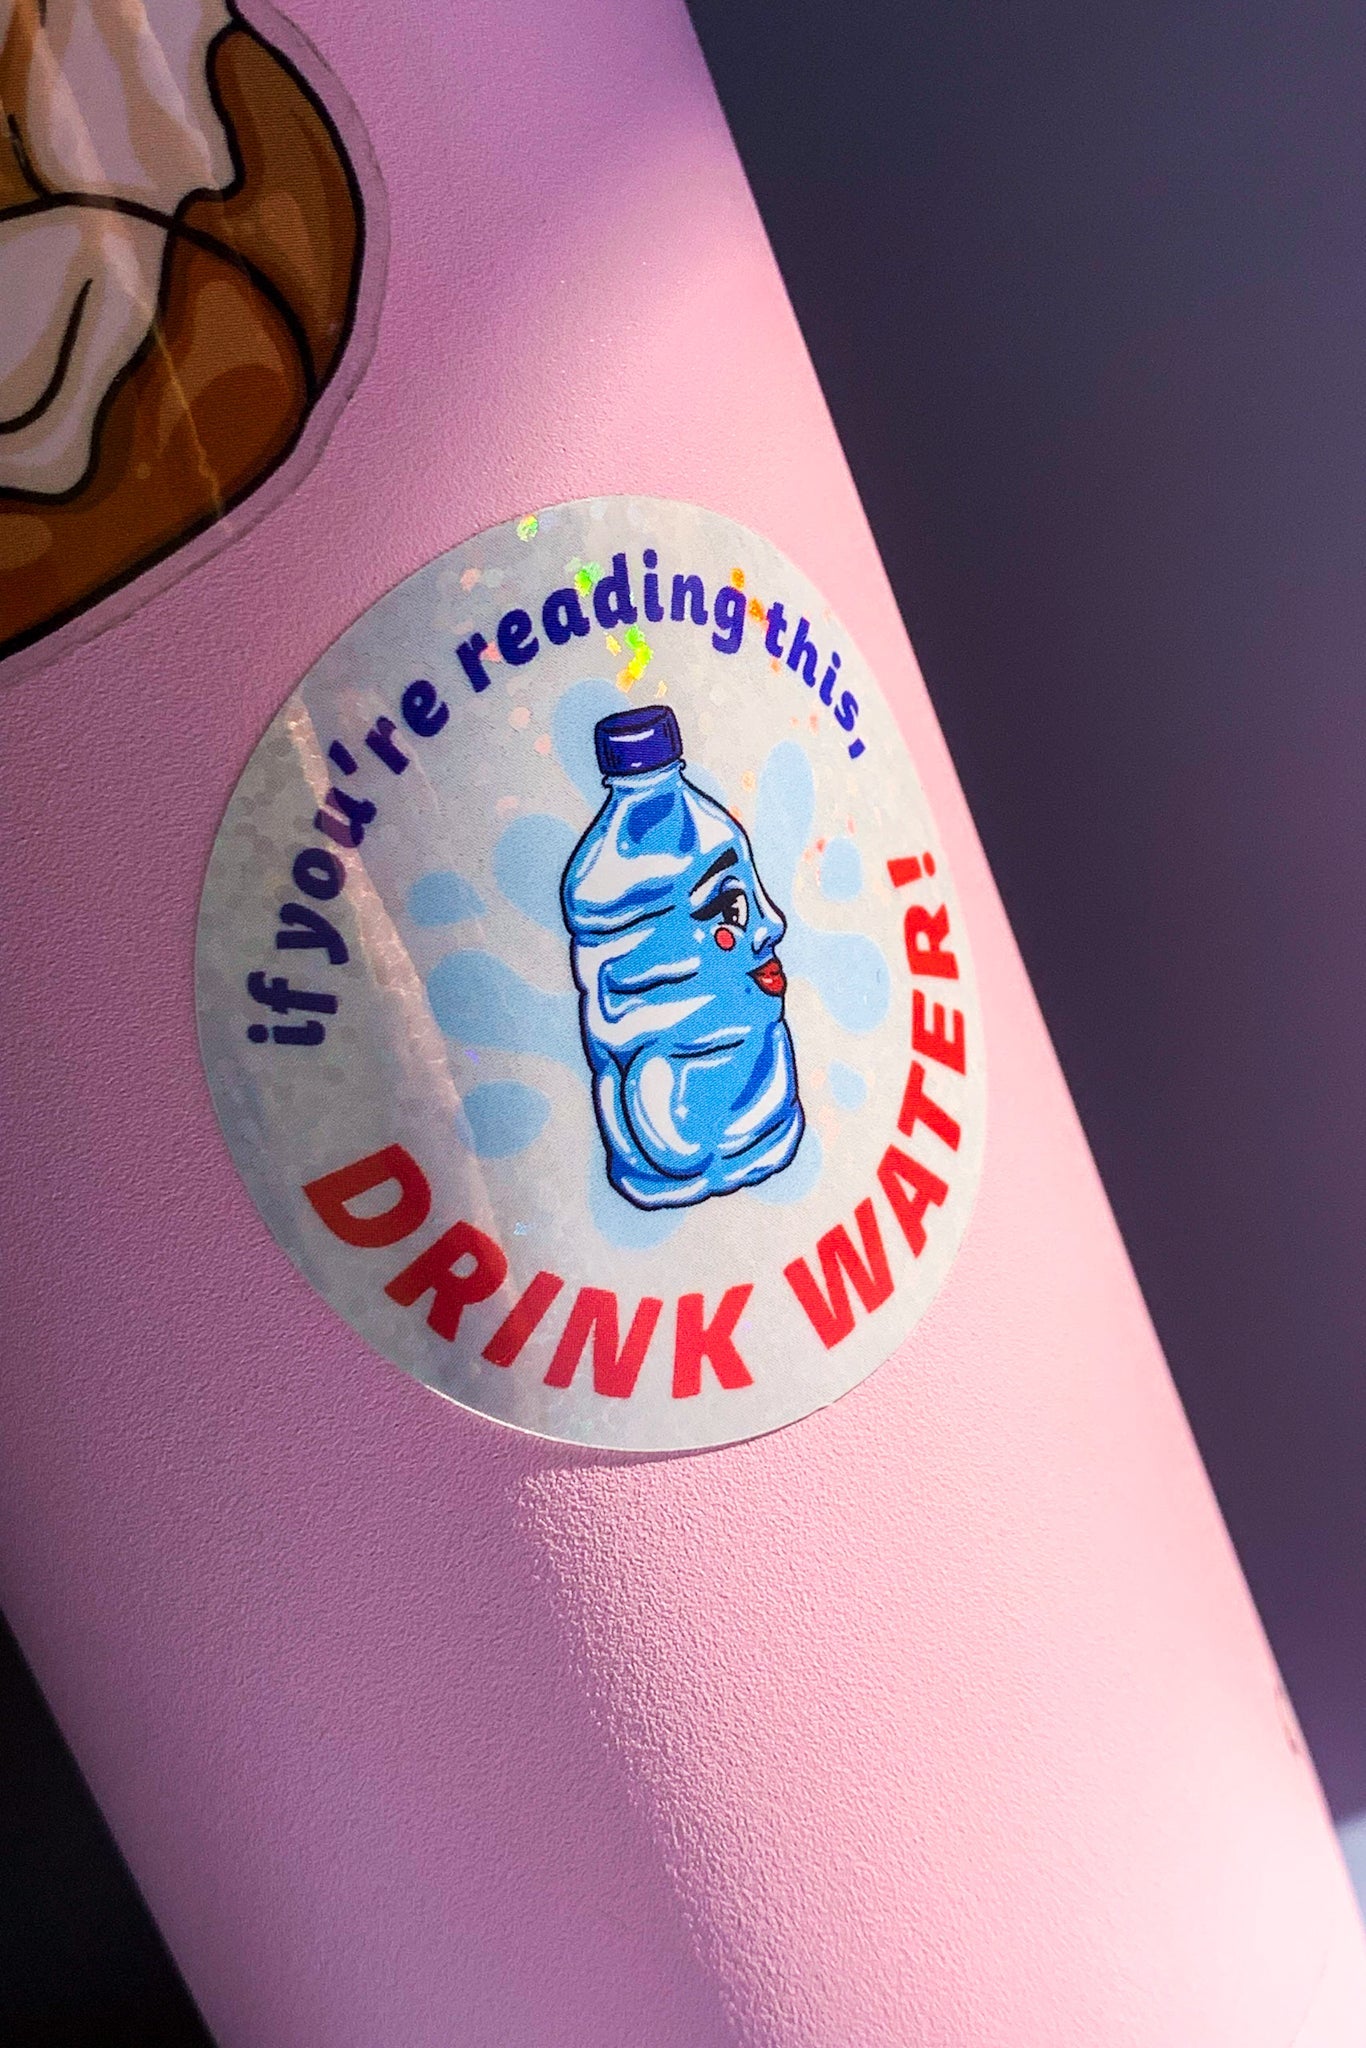 Drink Water! Vinyl Sticker - Cheeky Art Studio-allison thompson-allisthompson-art